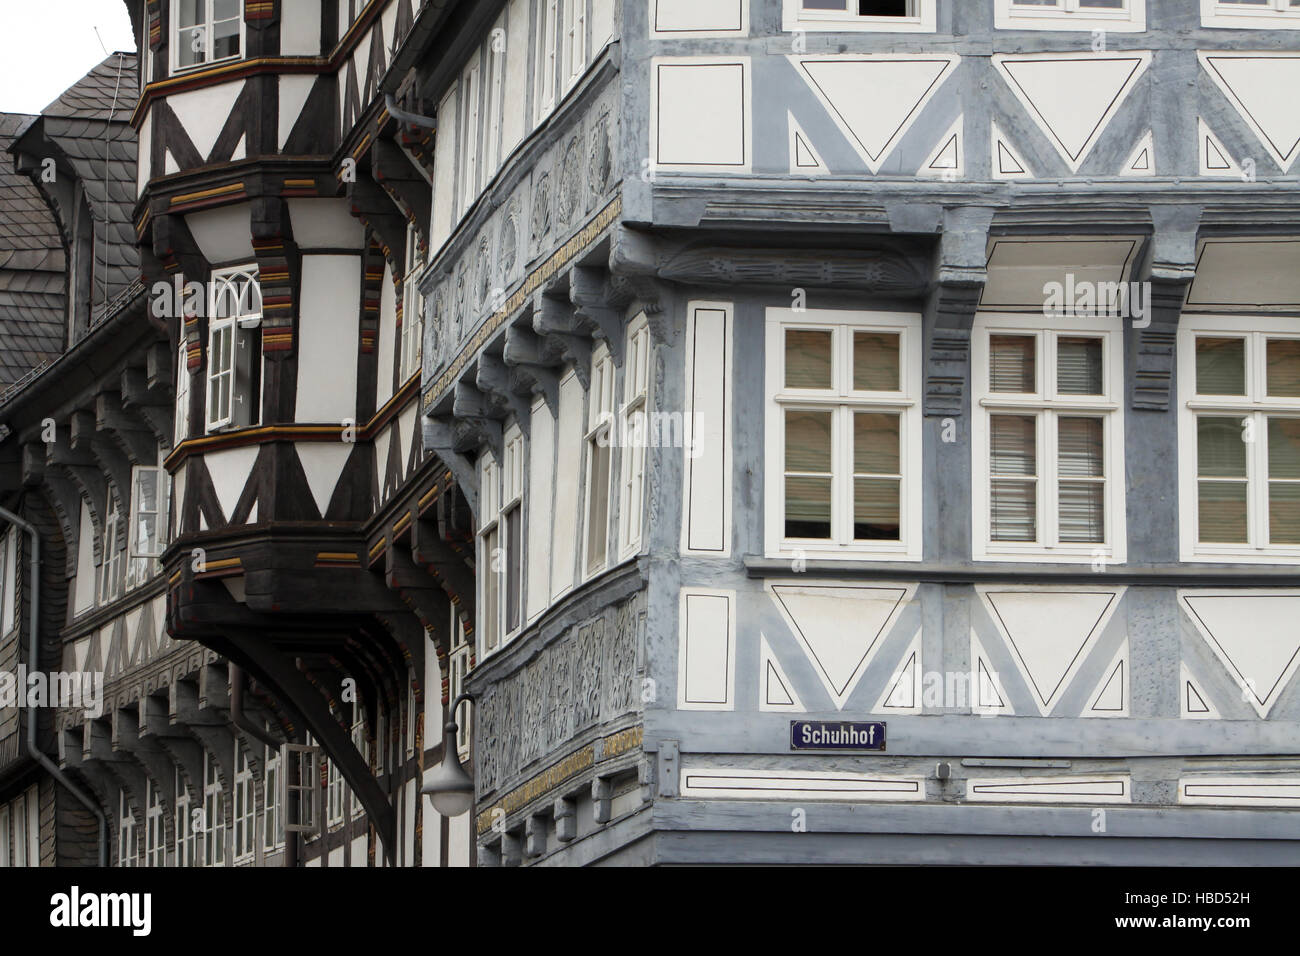 Fachwerkhaus in der historischen Altstadt Stock Photo